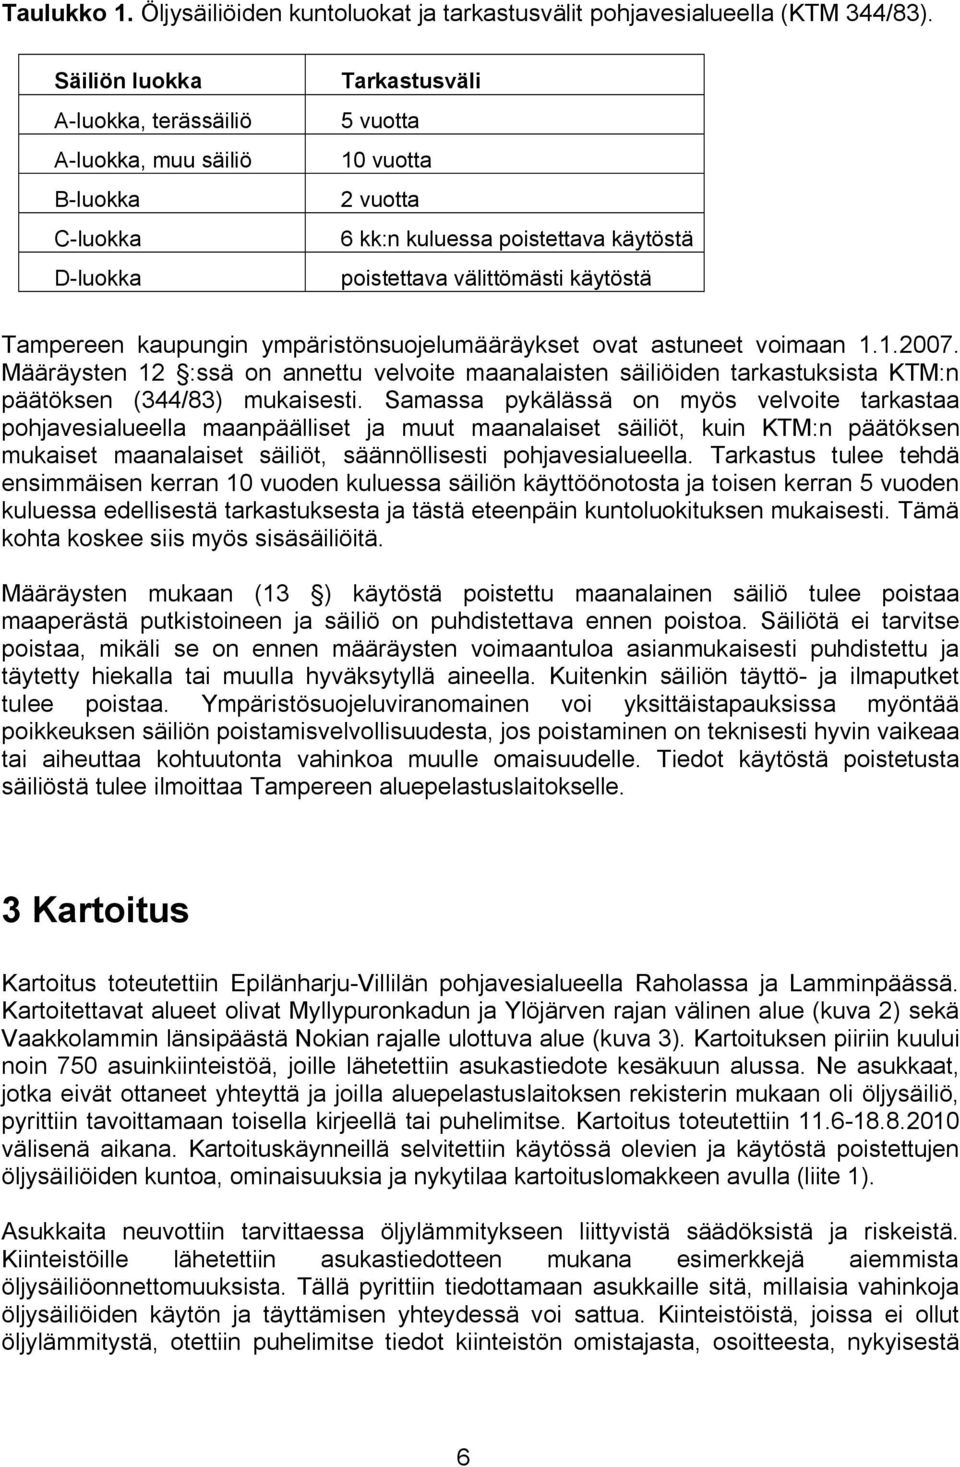 Tampereen kaupungin ympäristönsuojelumääräykset ovat astuneet voimaan 1.1.2007. Määräysten 12 :ssä on annettu velvoite maanalaisten säiliöiden tarkastuksista KTM:n päätöksen (344/83) mukaisesti.